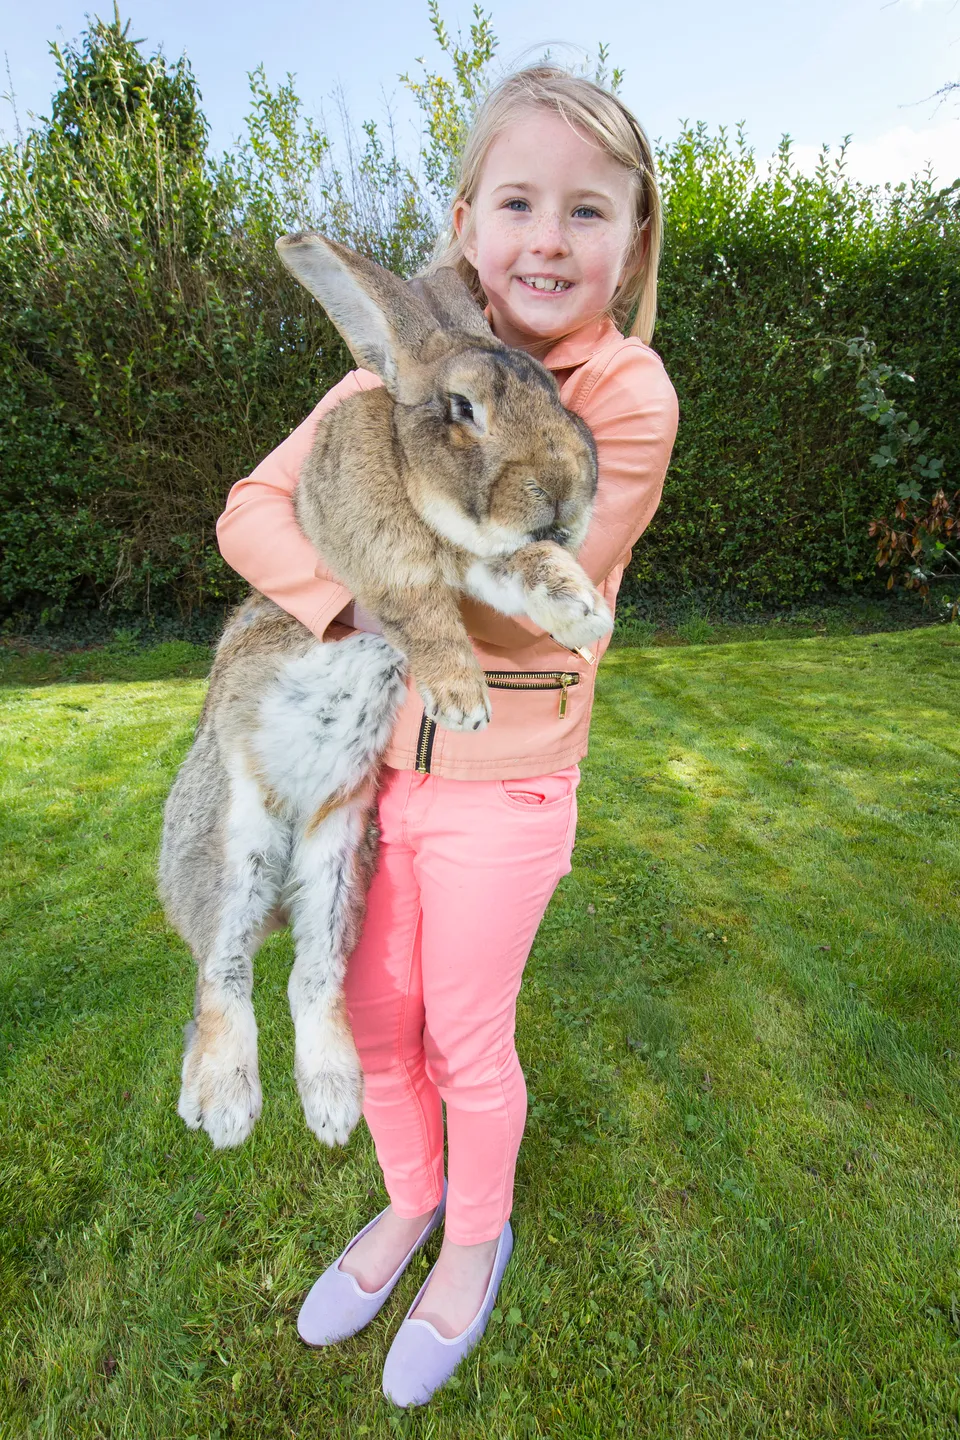 Giant Rabbits Make Pets, Sayin' | HuffPost null